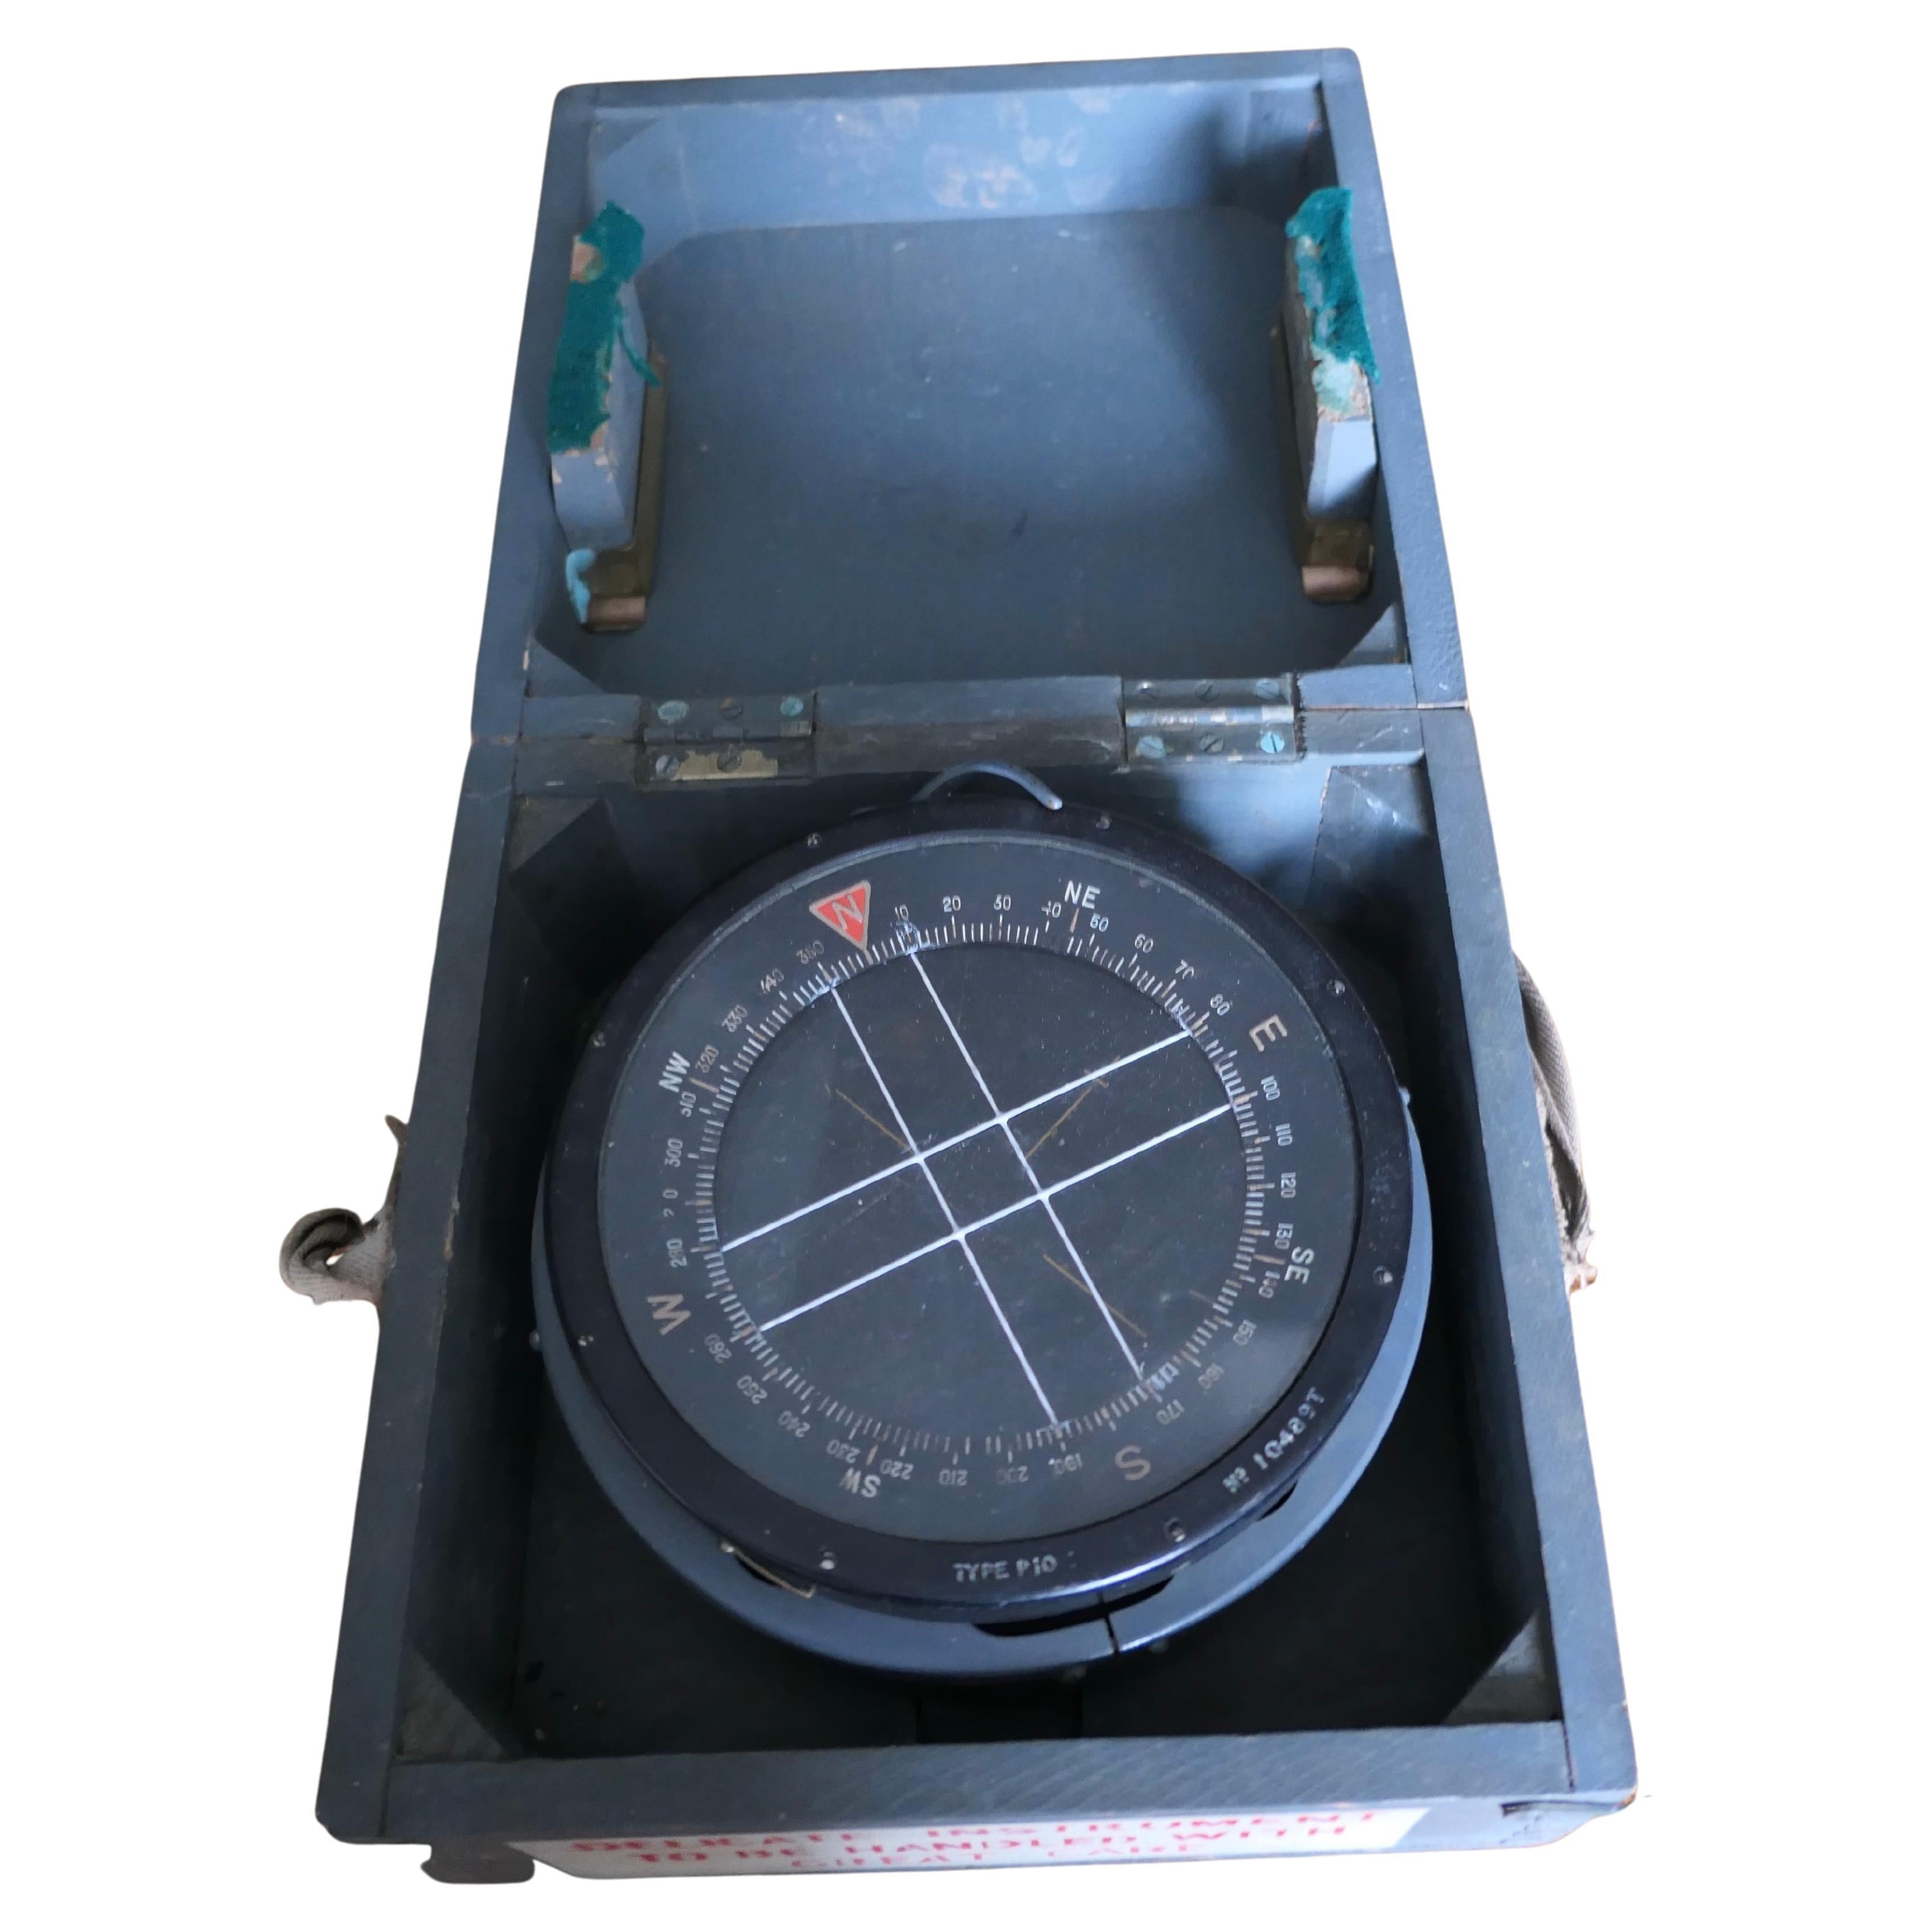 Royal Air Force P10 Aircraft Compass No. 10489 T